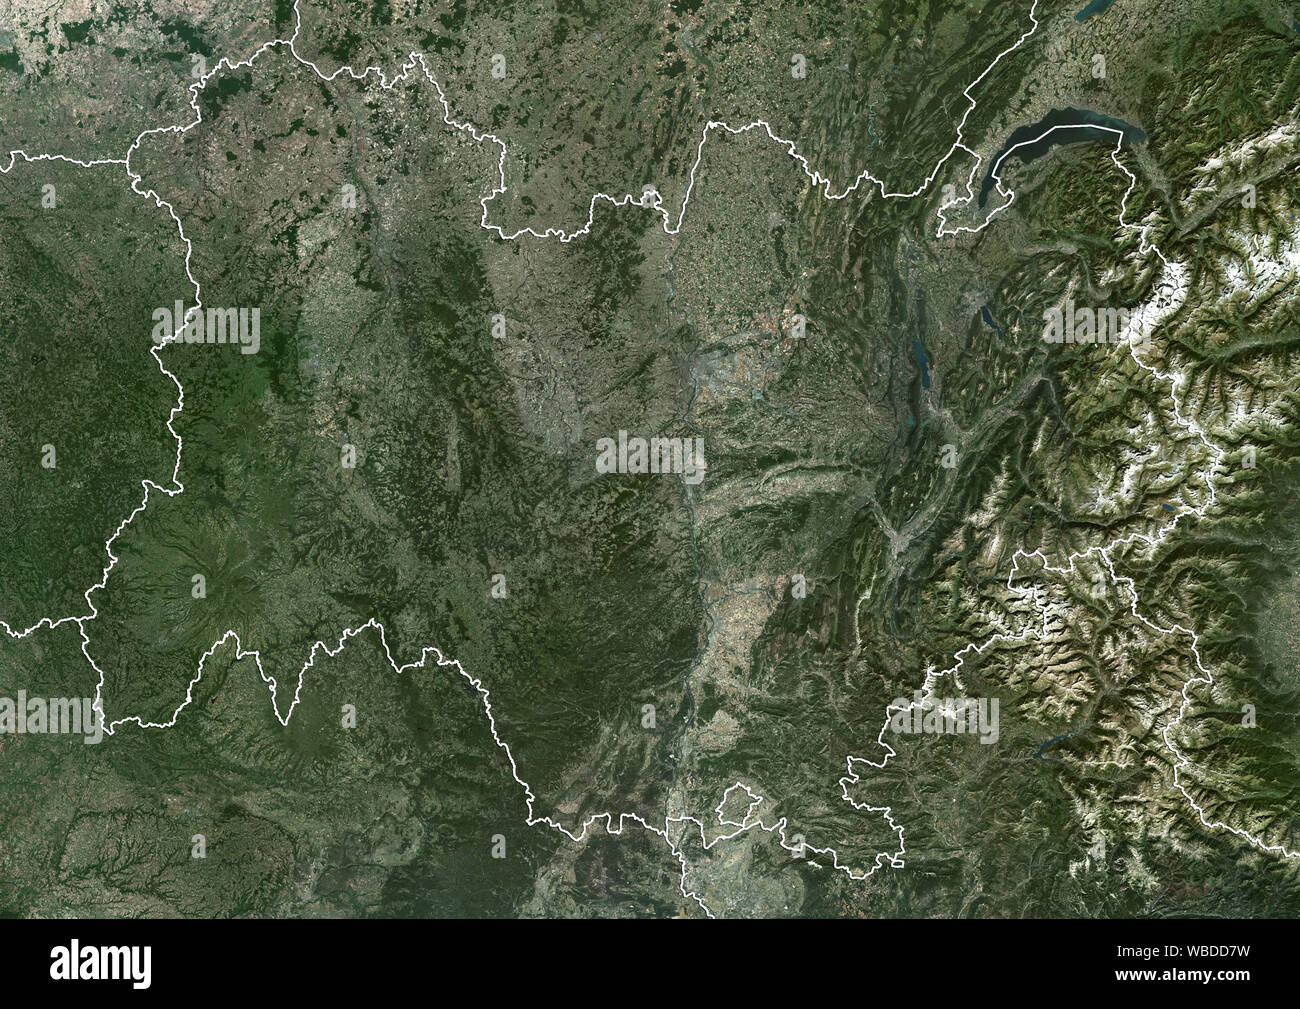 Colore immagine satellitare della Auvergne-Rhone-Alpes regione nel sud-est-Francia centrale (con i confini amministrativi). Questa immagine è stata elaborata sulla base dei dati acquisiti nel 2018 da Sentinel-2 satelliti. Foto Stock